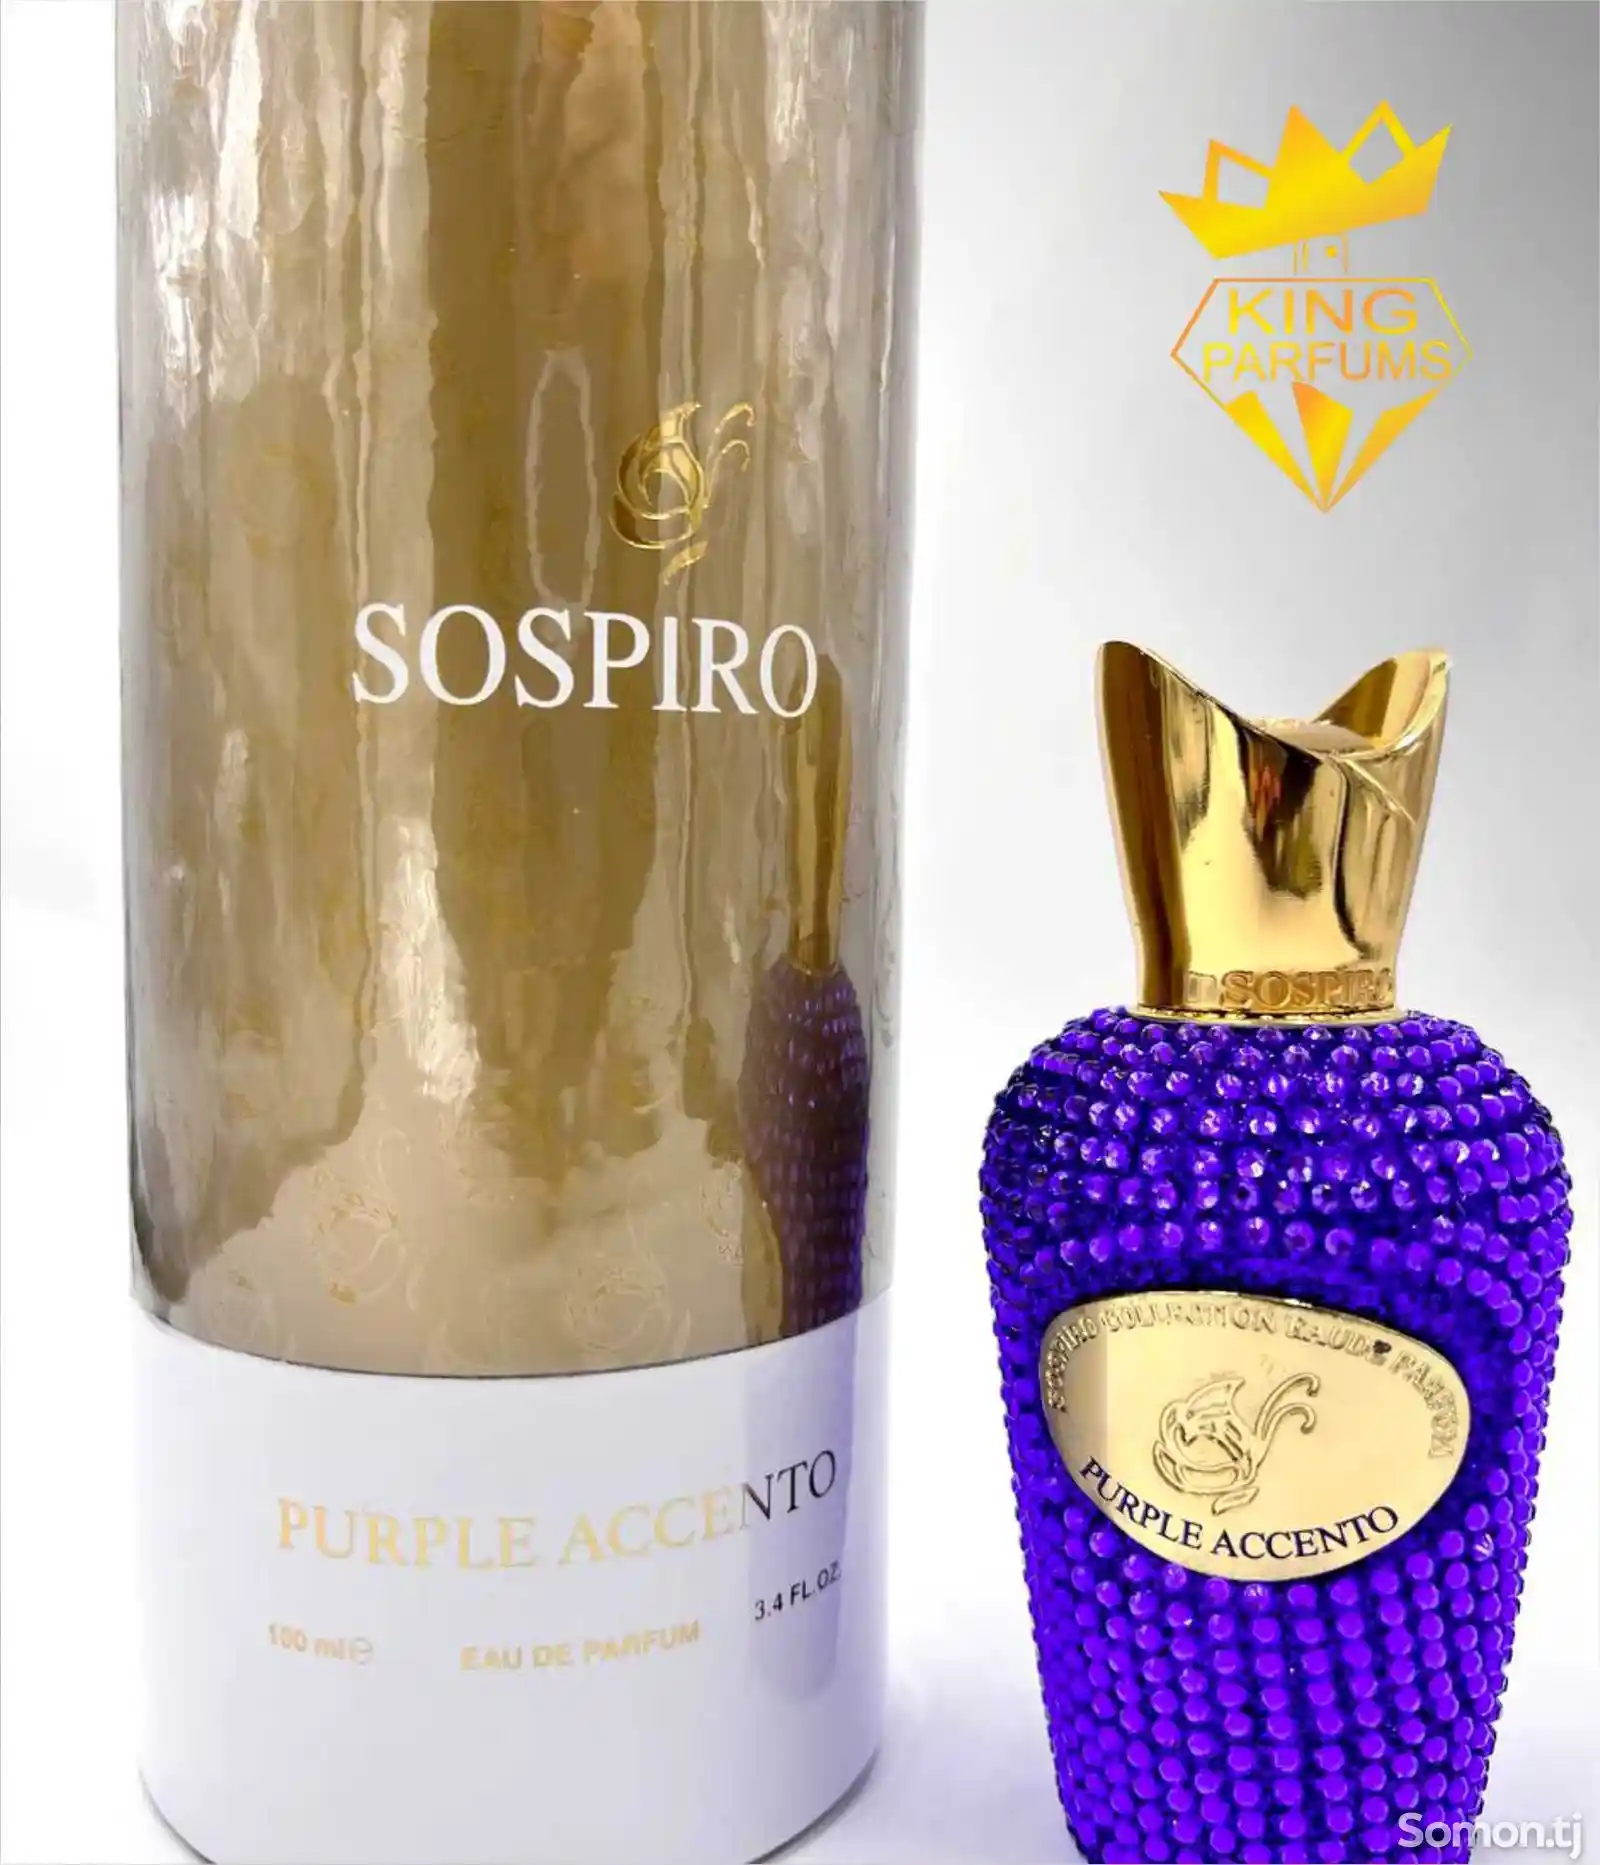 Парфюм Sospiro perfumes purple accento-3